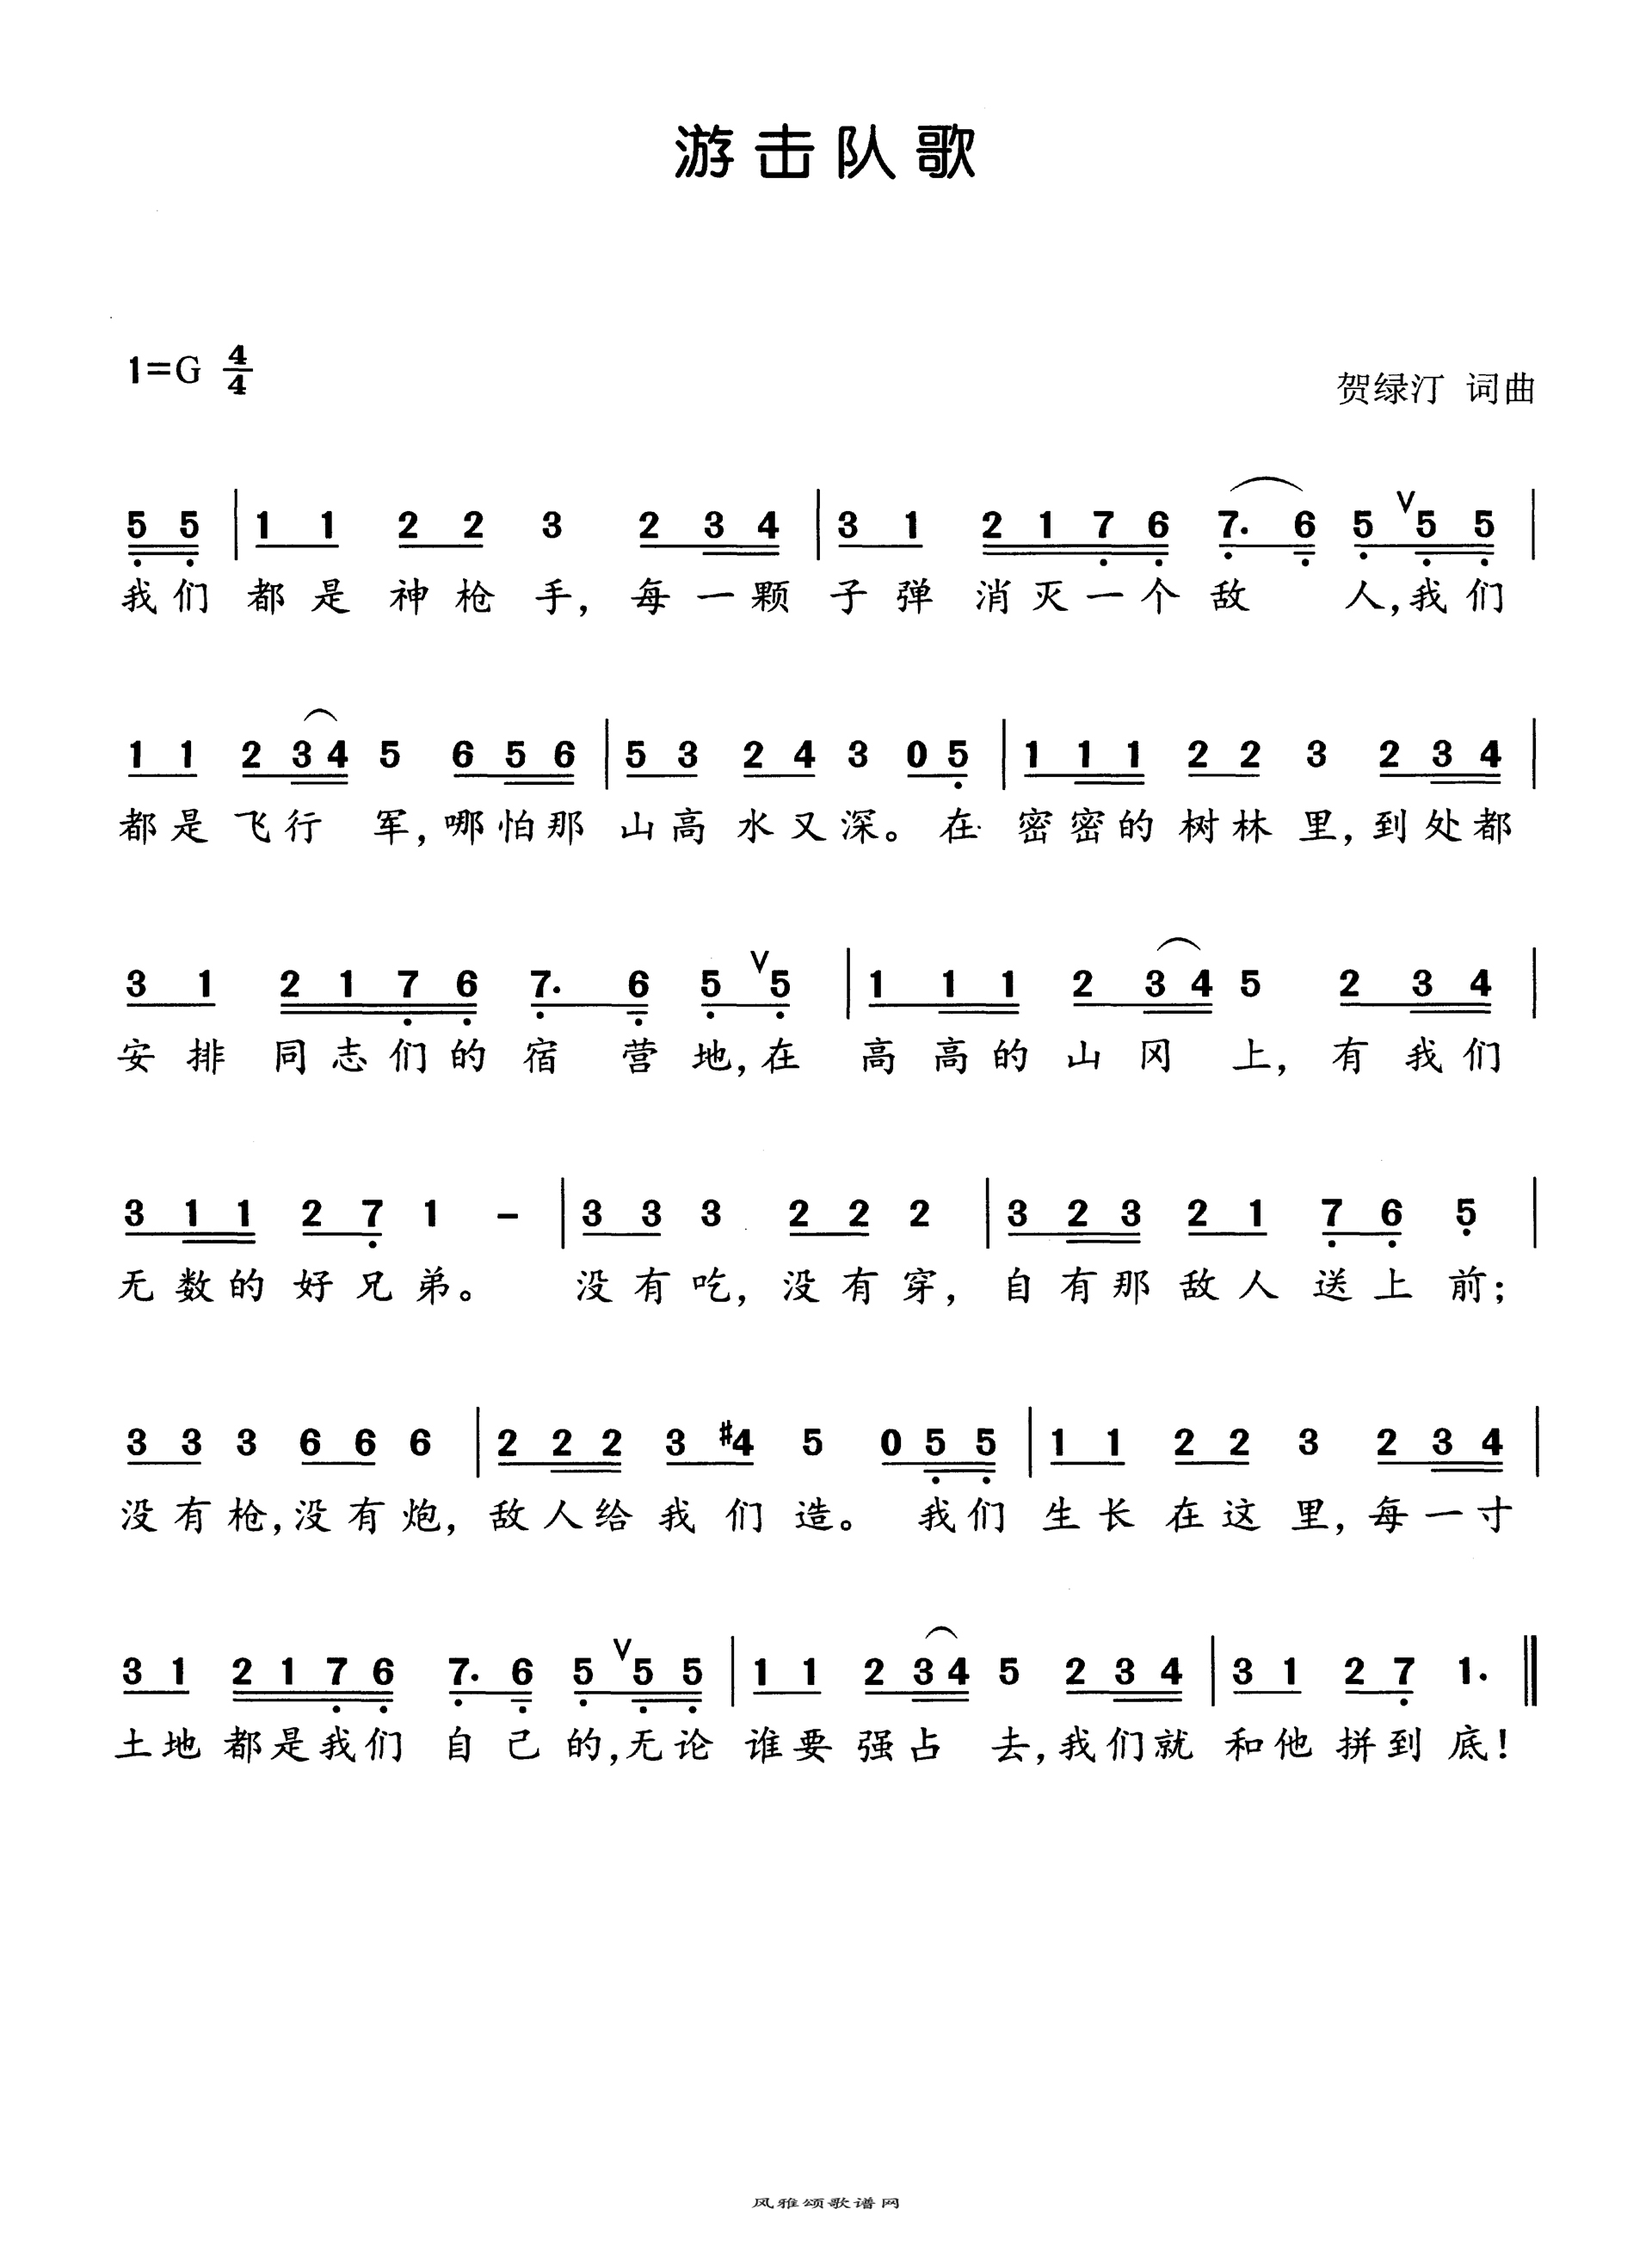 [朝鲜]游击队之歌-简谱歌谱乐谱-找谱网